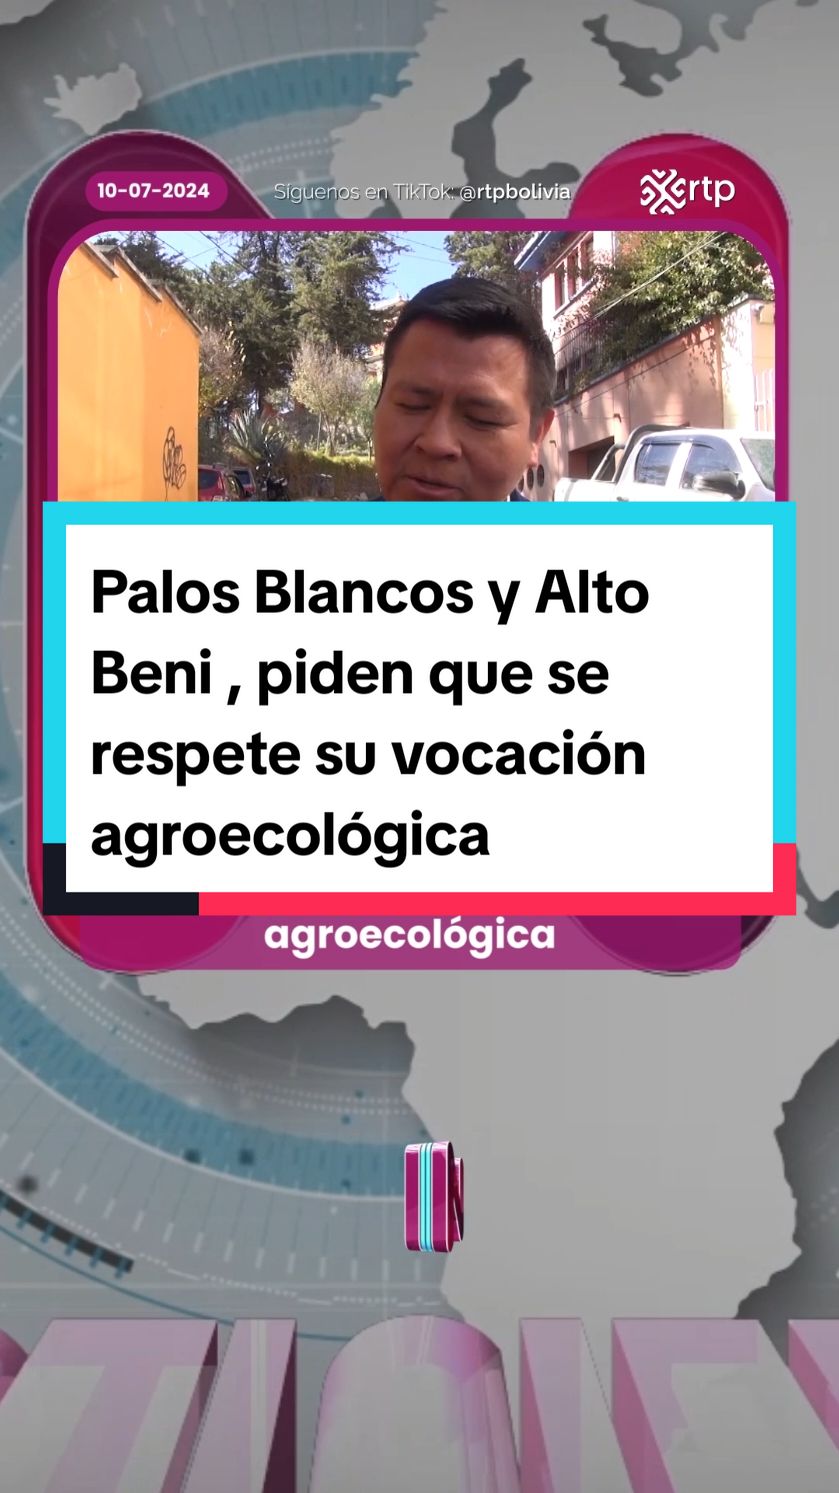 🎤📺 #PalosBlancos y #AltoBeni , piden que se respete su vocación #agroecológica . Ratifican su pedido a la #AJAM para que no autorice operaciones mineras en esos municipios. #rtpinforma #rtp #noticias #fouryoupage 